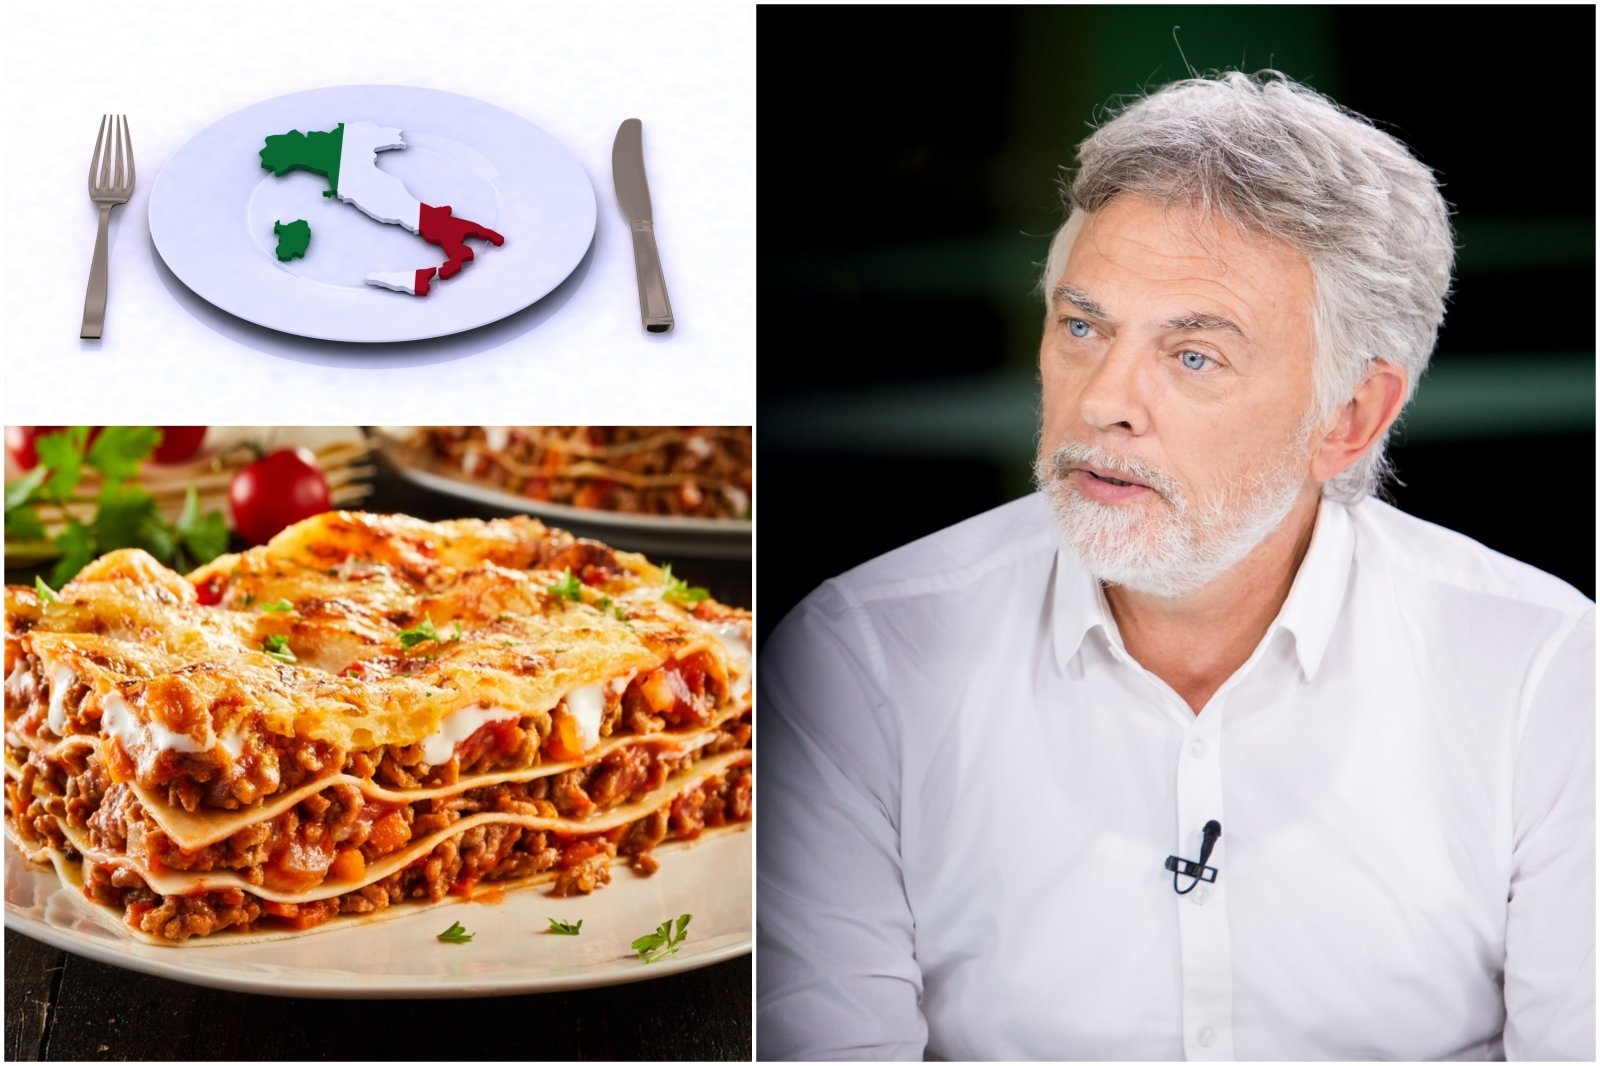 Il giornalista è sorpreso dalle abitudini alimentari degli abitanti dell’Est Europa: gli italiani sono tutto il contrario